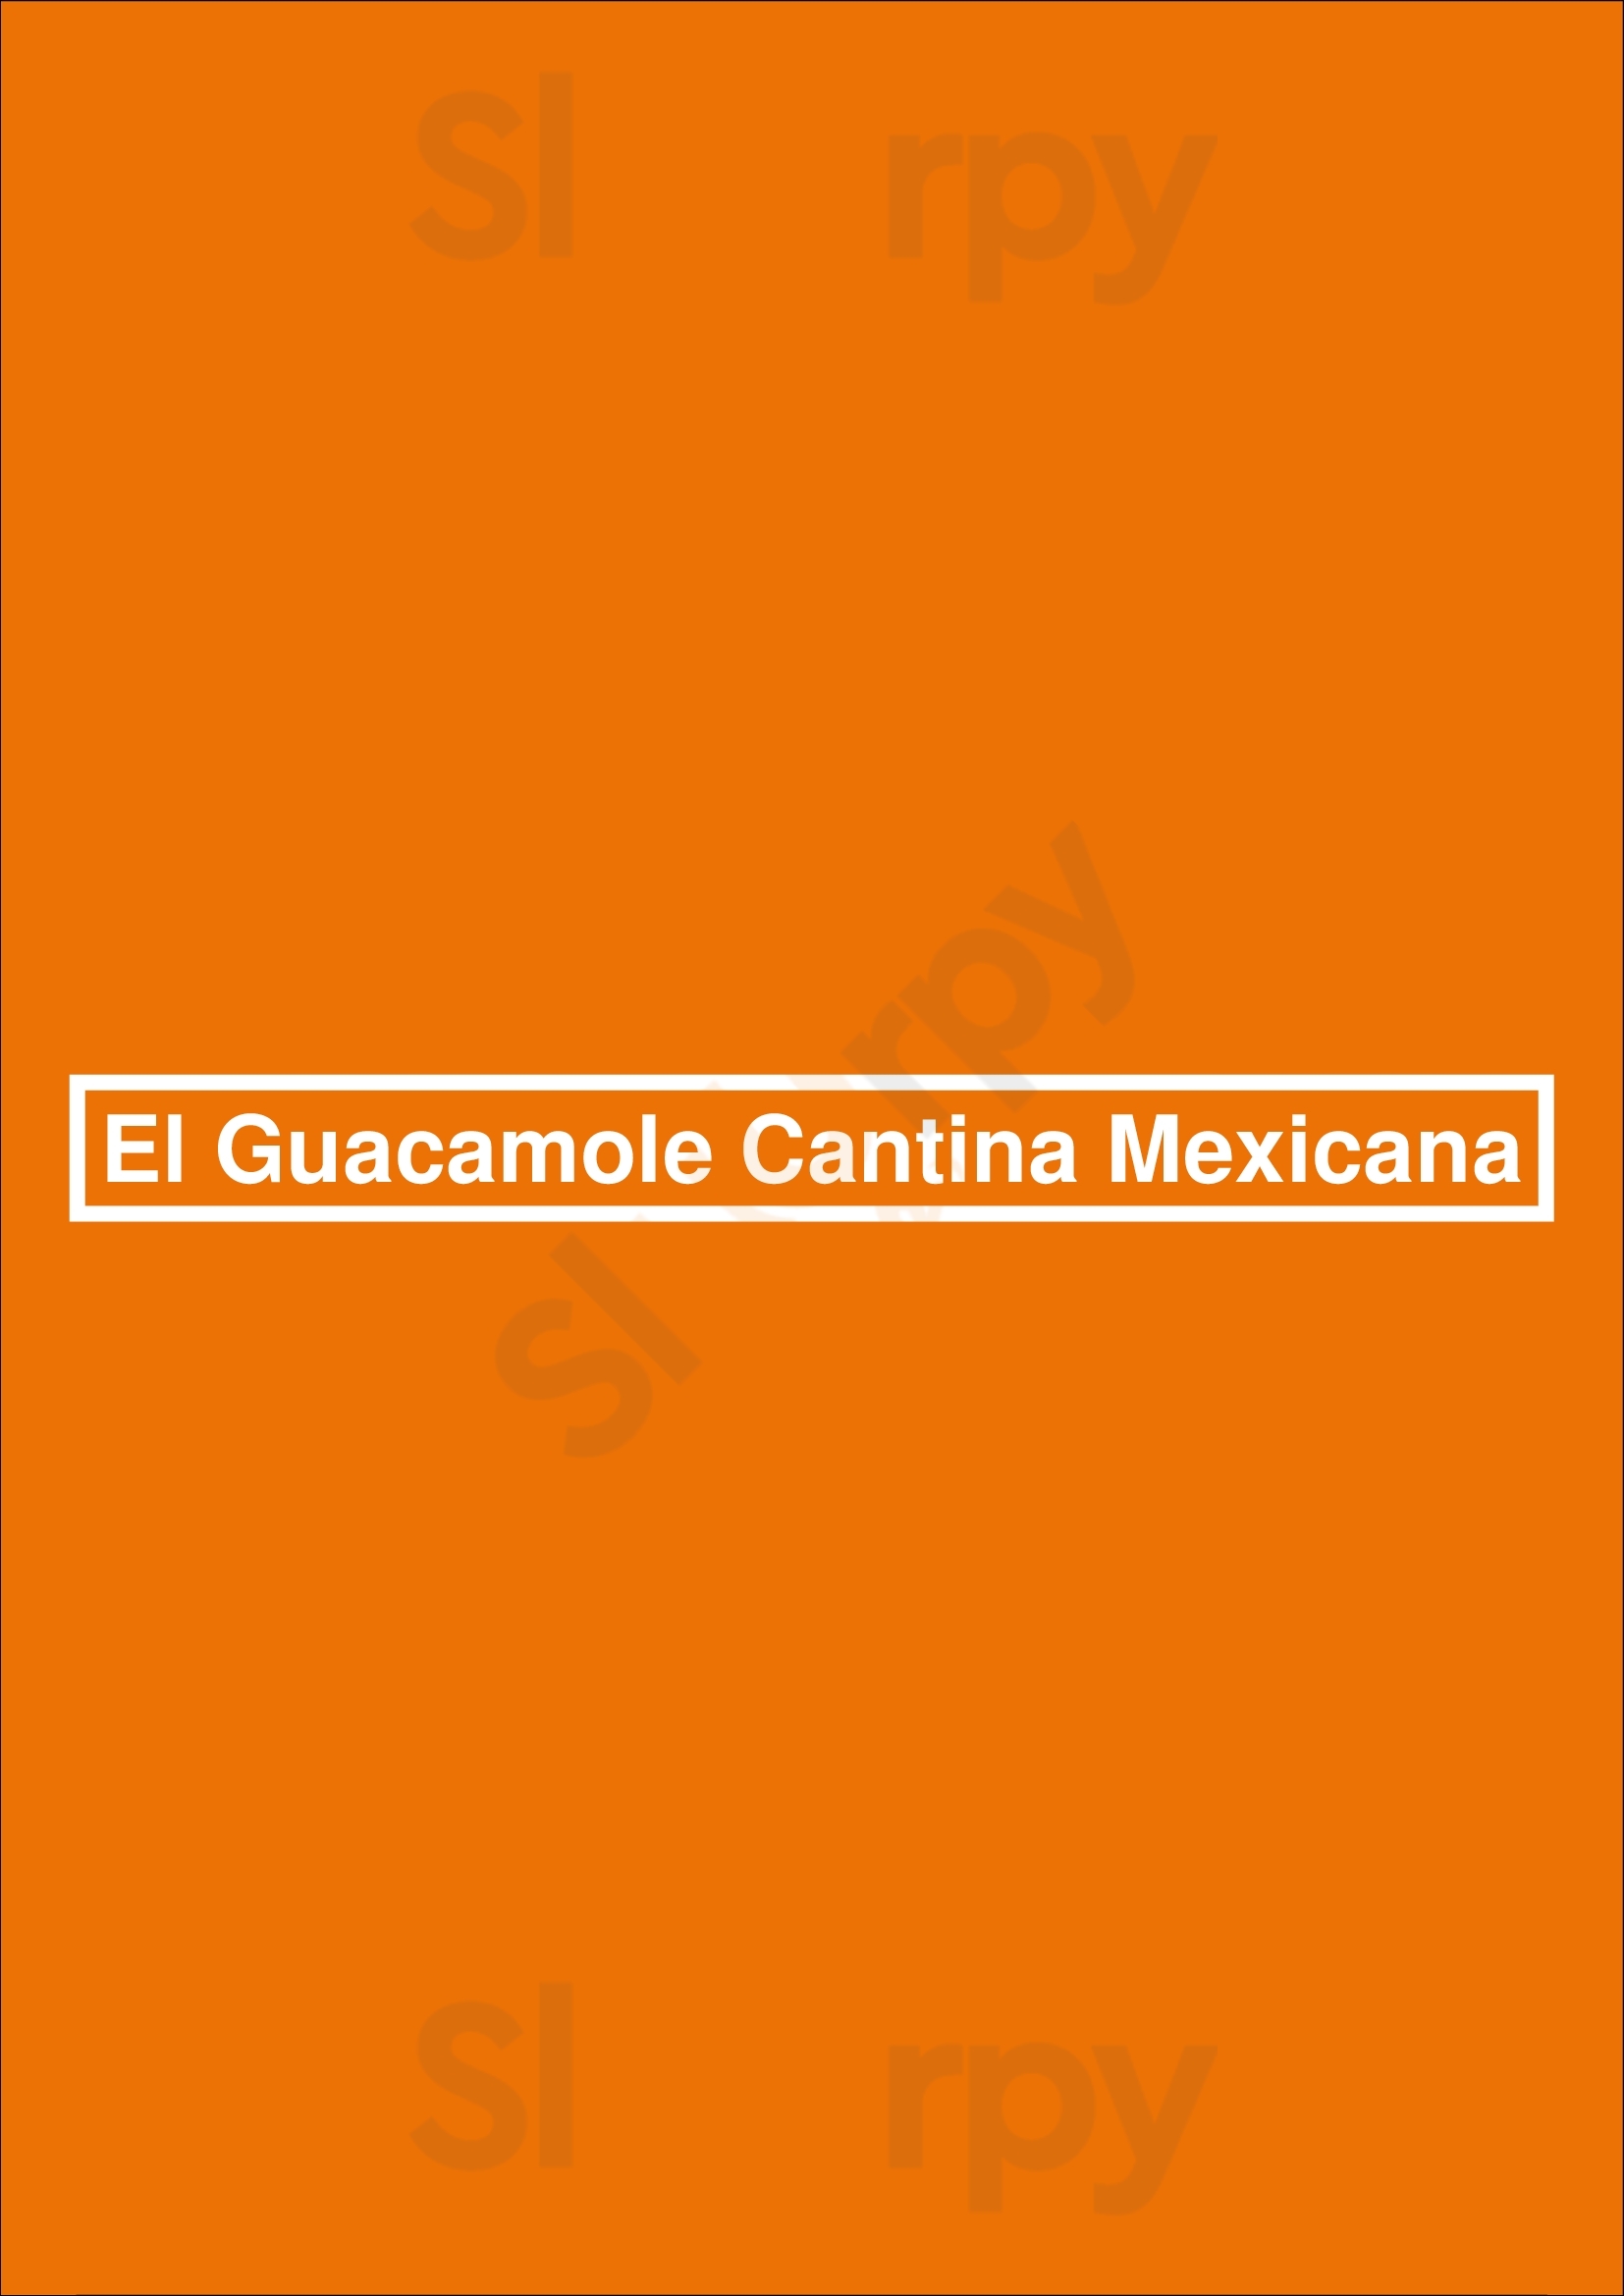 El Guacamole Cantina Mexicana Vila Nova de Gaia Menu - 1